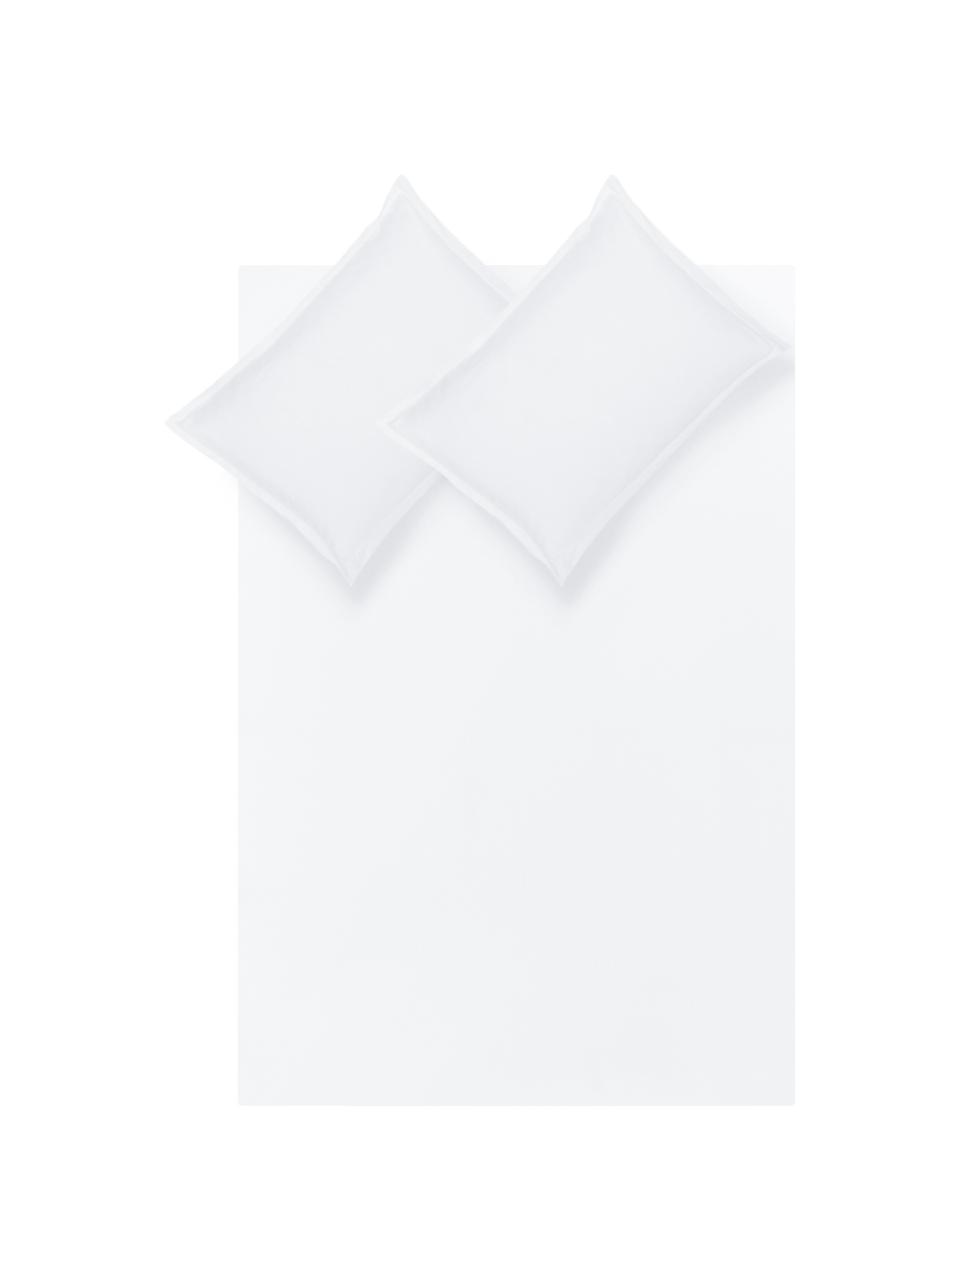 Parure copripiumino in raso di cotone bianco con orlo rialzato Premium, Bianco, 155 x 200 cm + 1 federa 50 x 80 cm